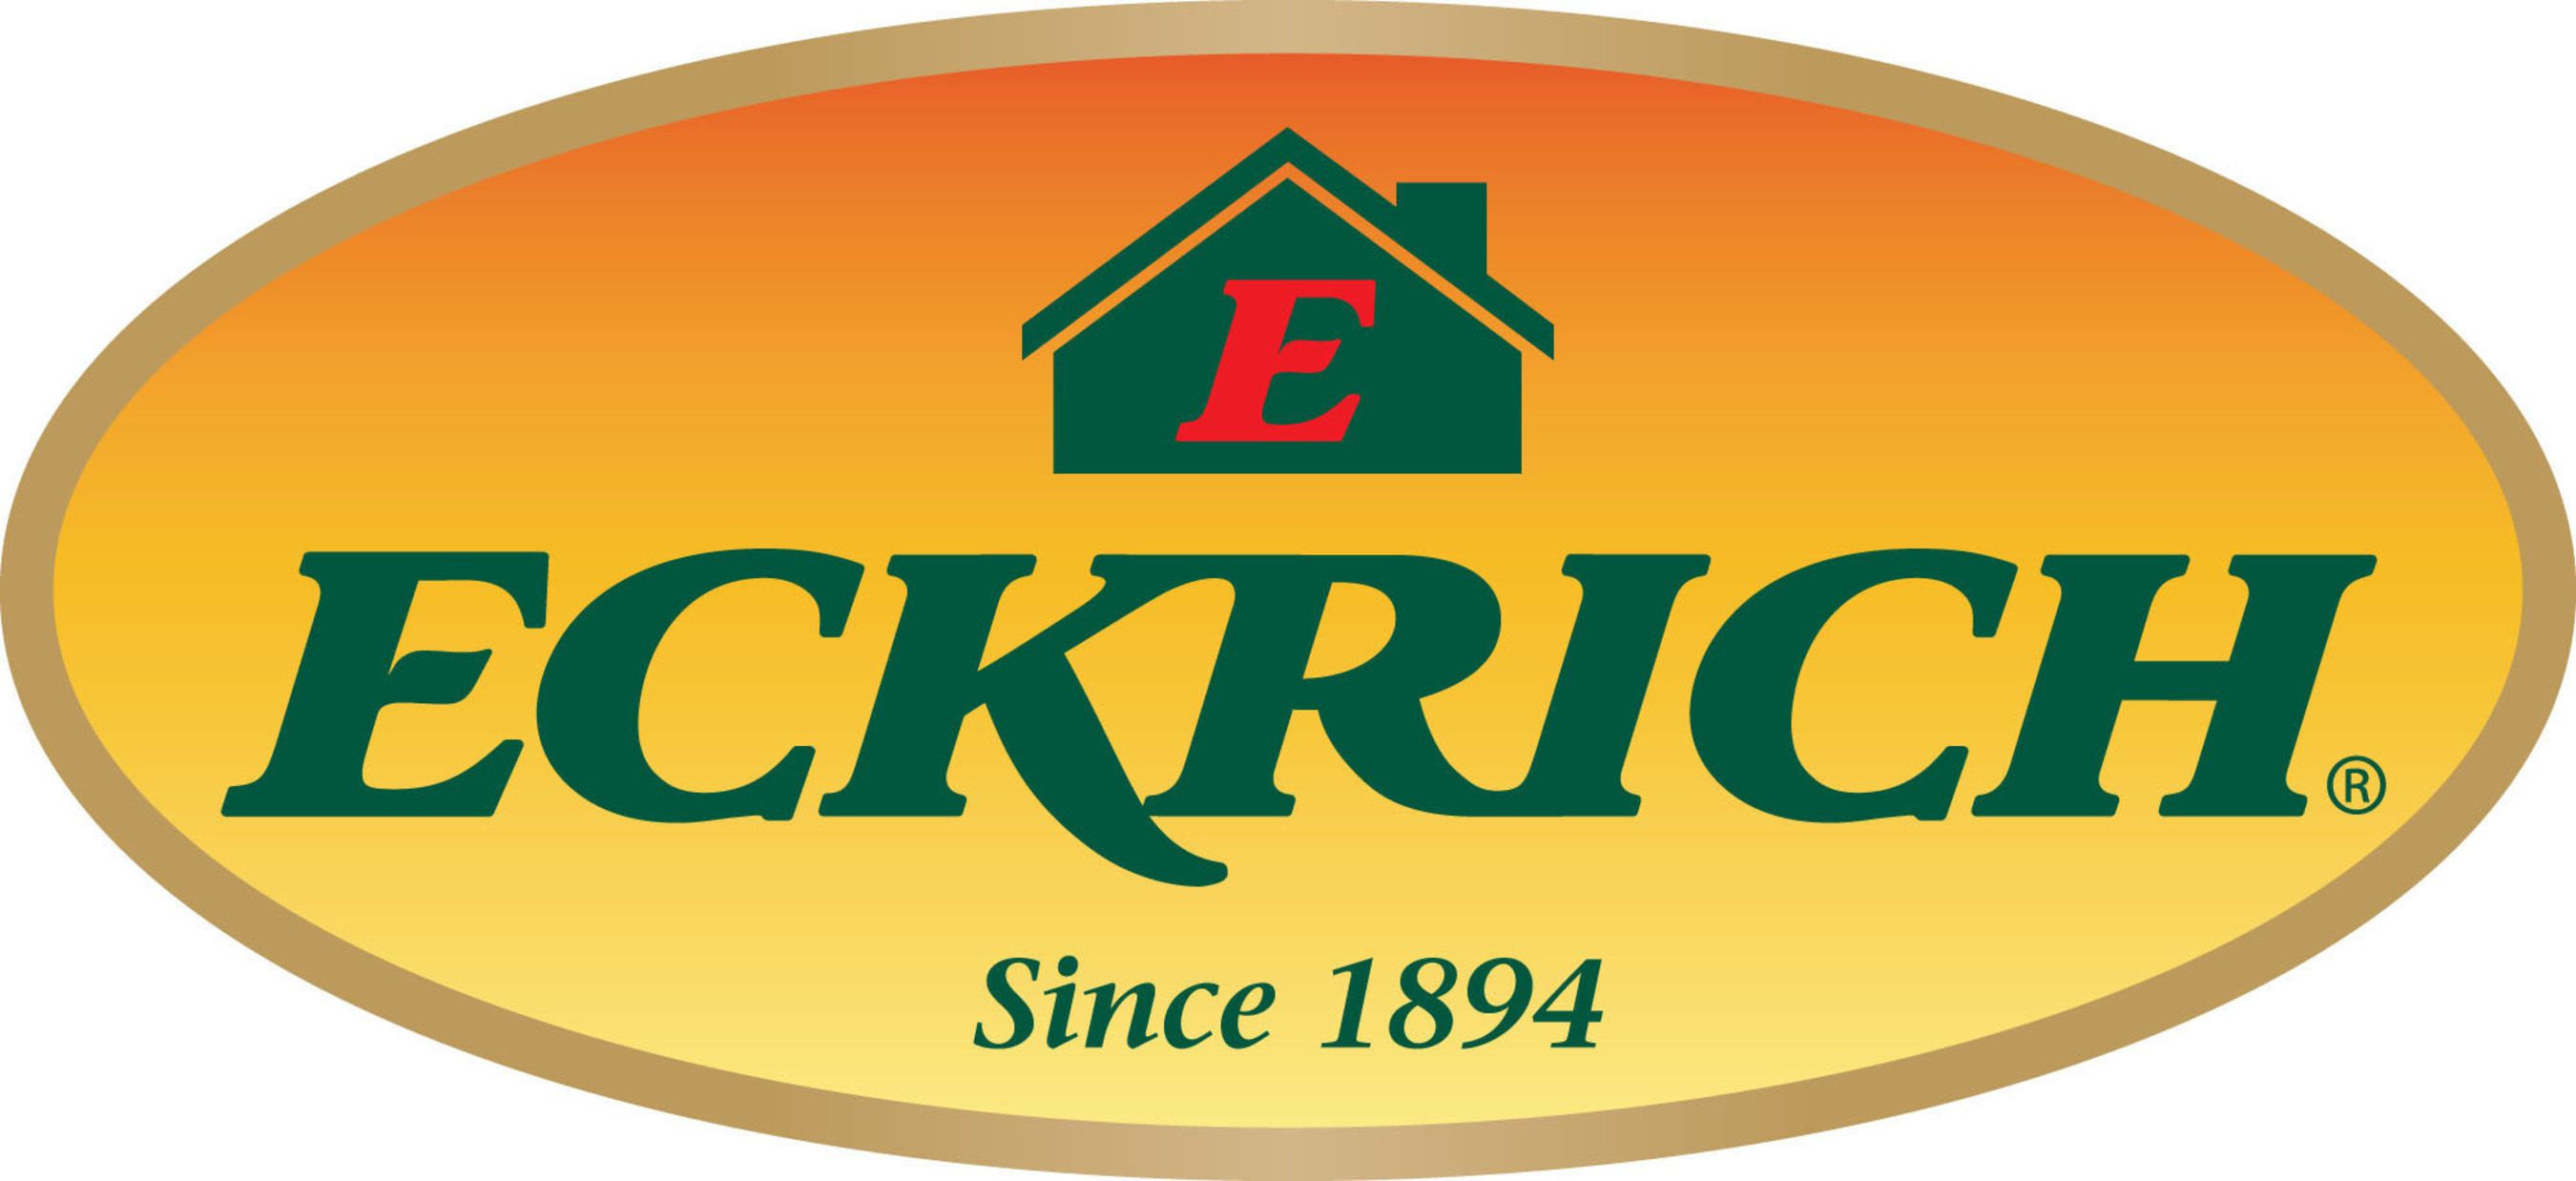 Eckrich logo. (PRNewsFoto/Eckrich) (PRNewsFoto/ECKRICH)